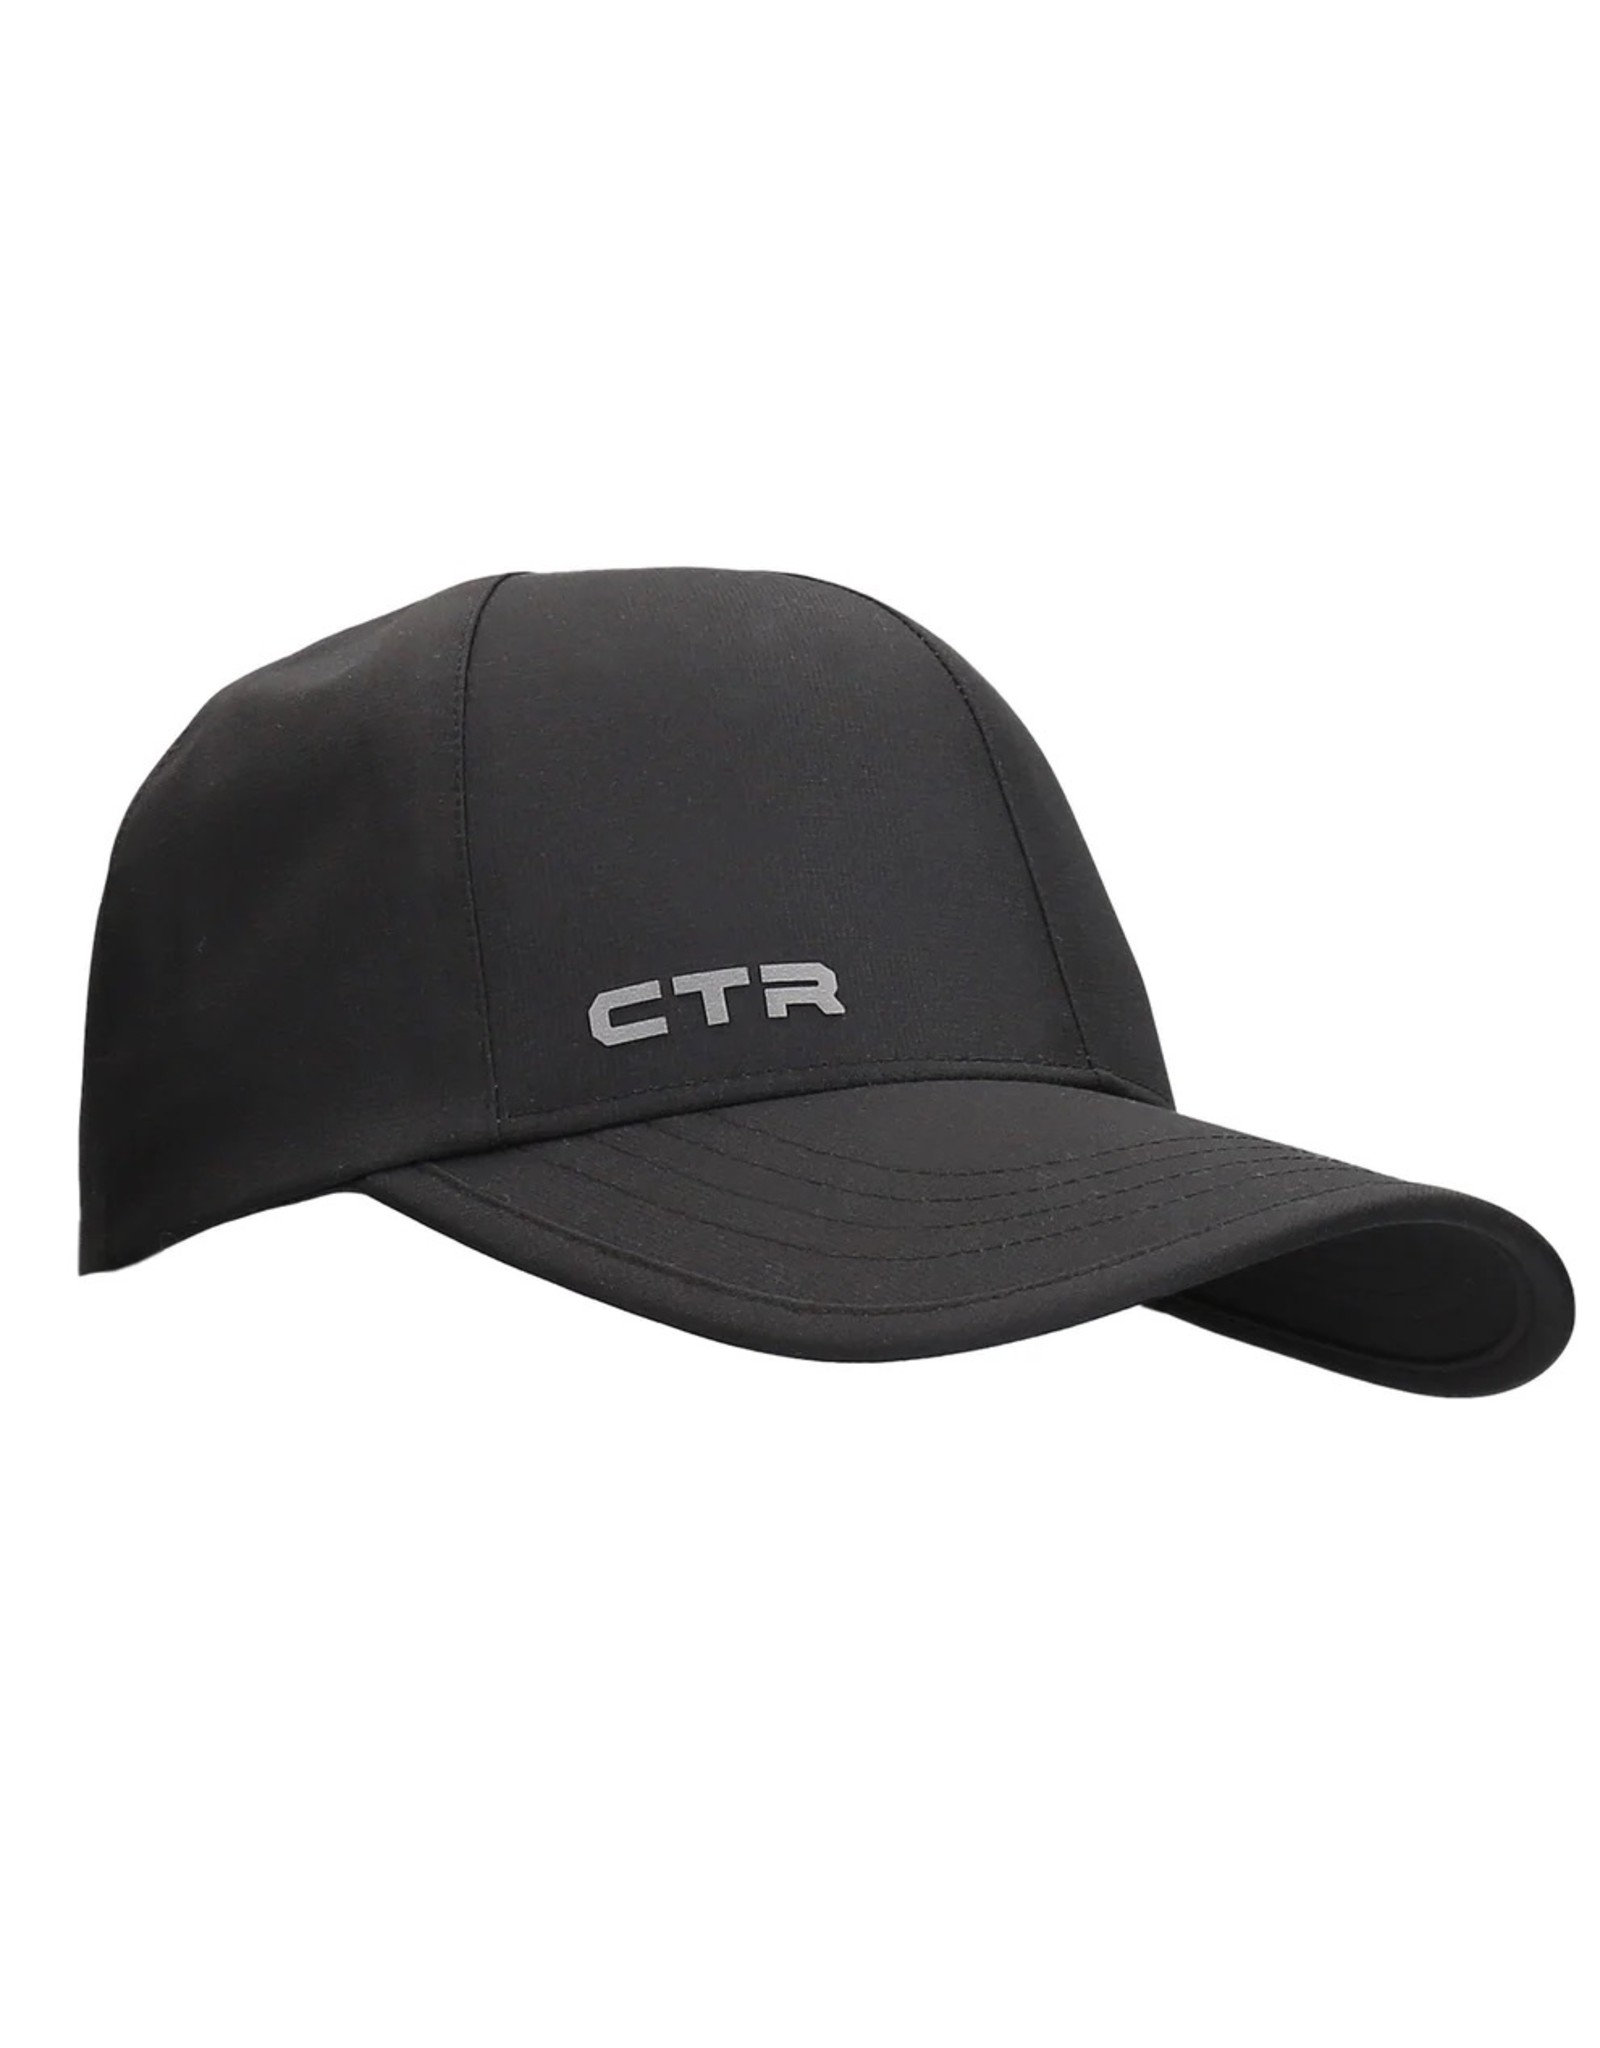 CTR STRATUS MIST CAP